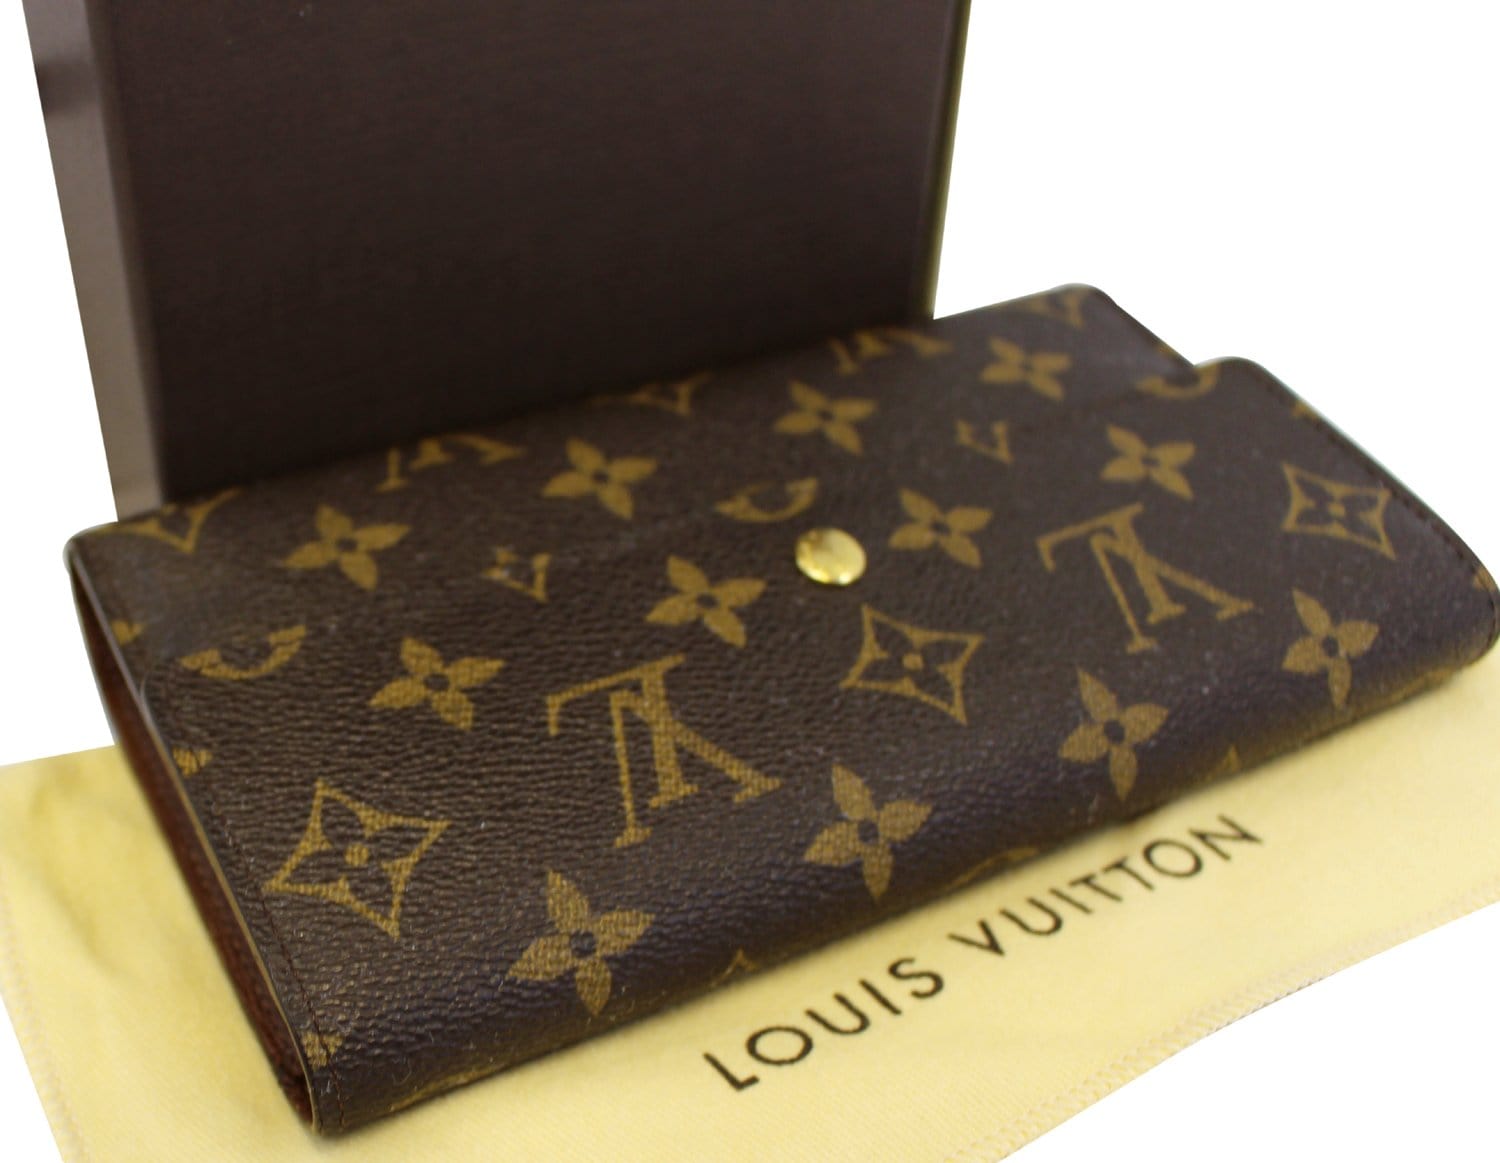 Louis Vuitton Porte Monnaie Tresor Wallet Monogram Canvas - ShopStyle